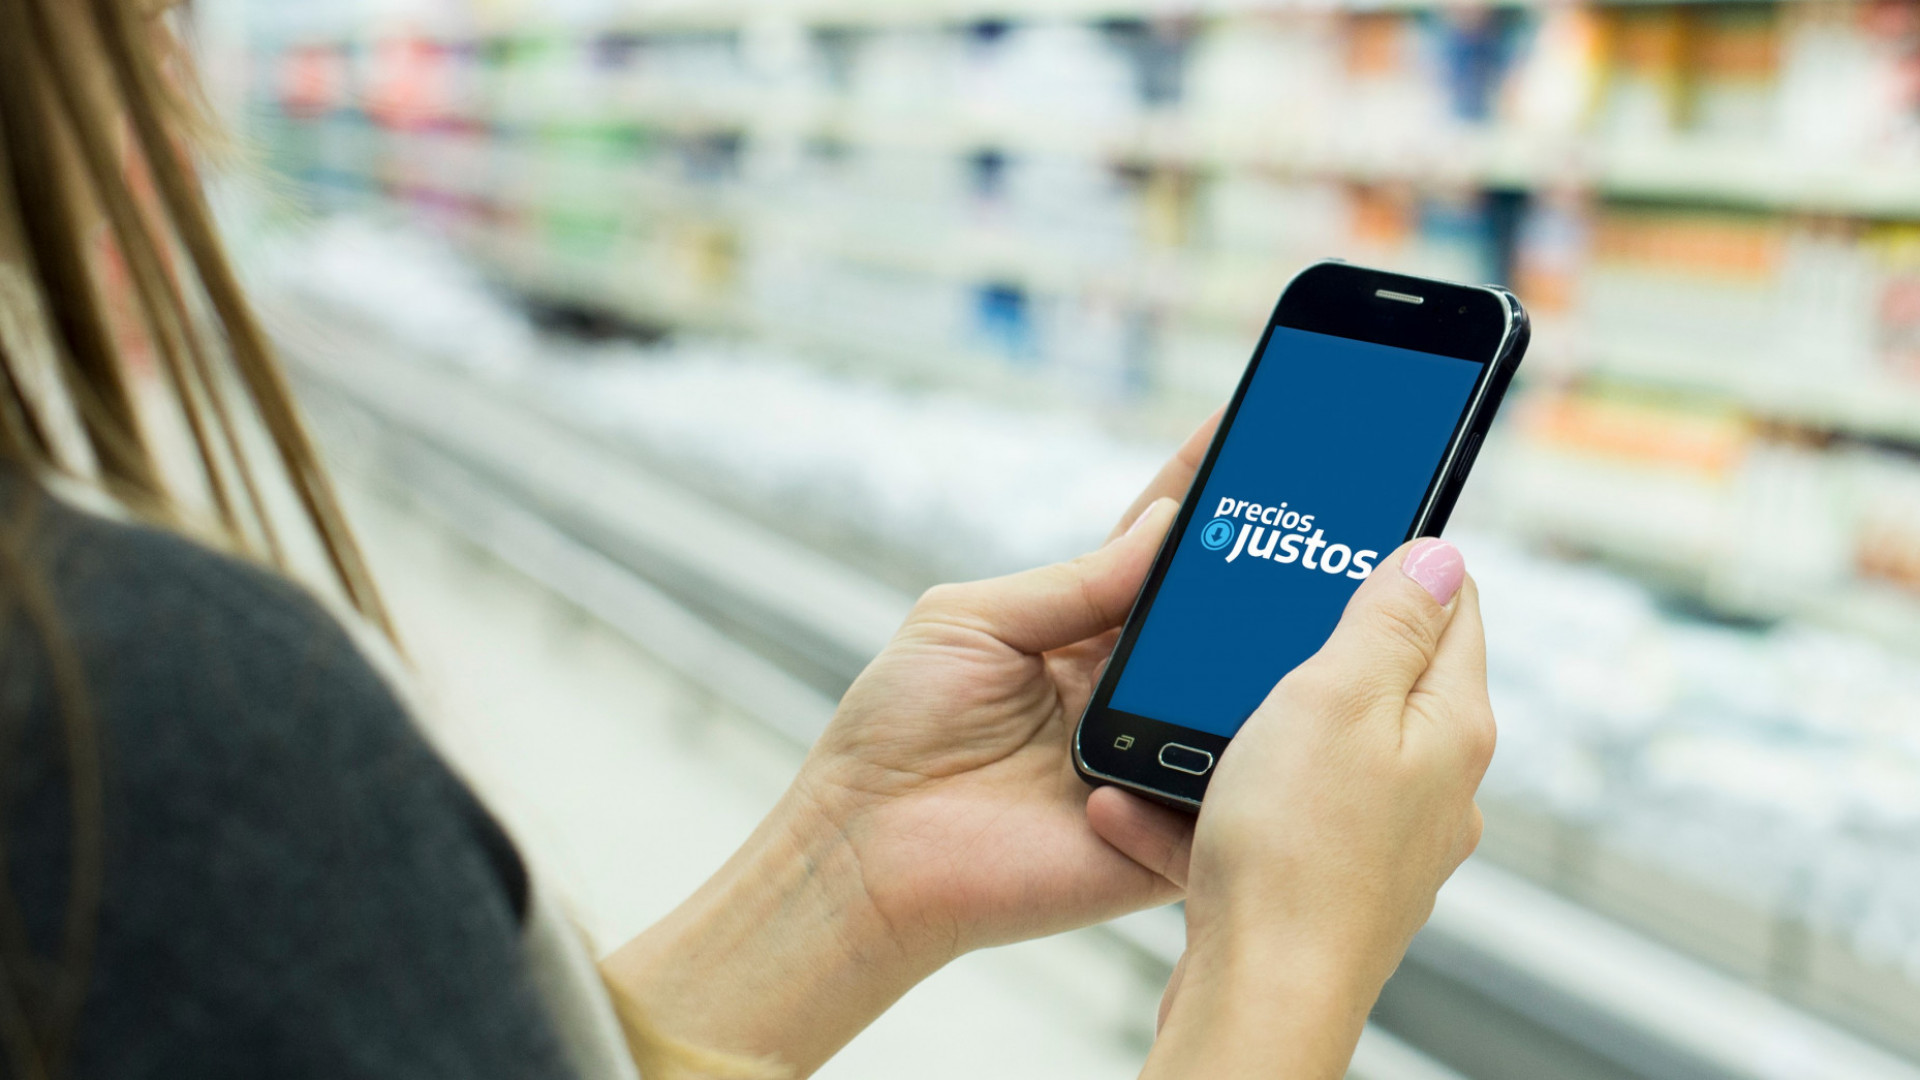 Precios Justos fija los precios de 2.000 productos de primera necesidad y se usa una app del móvil para ello.